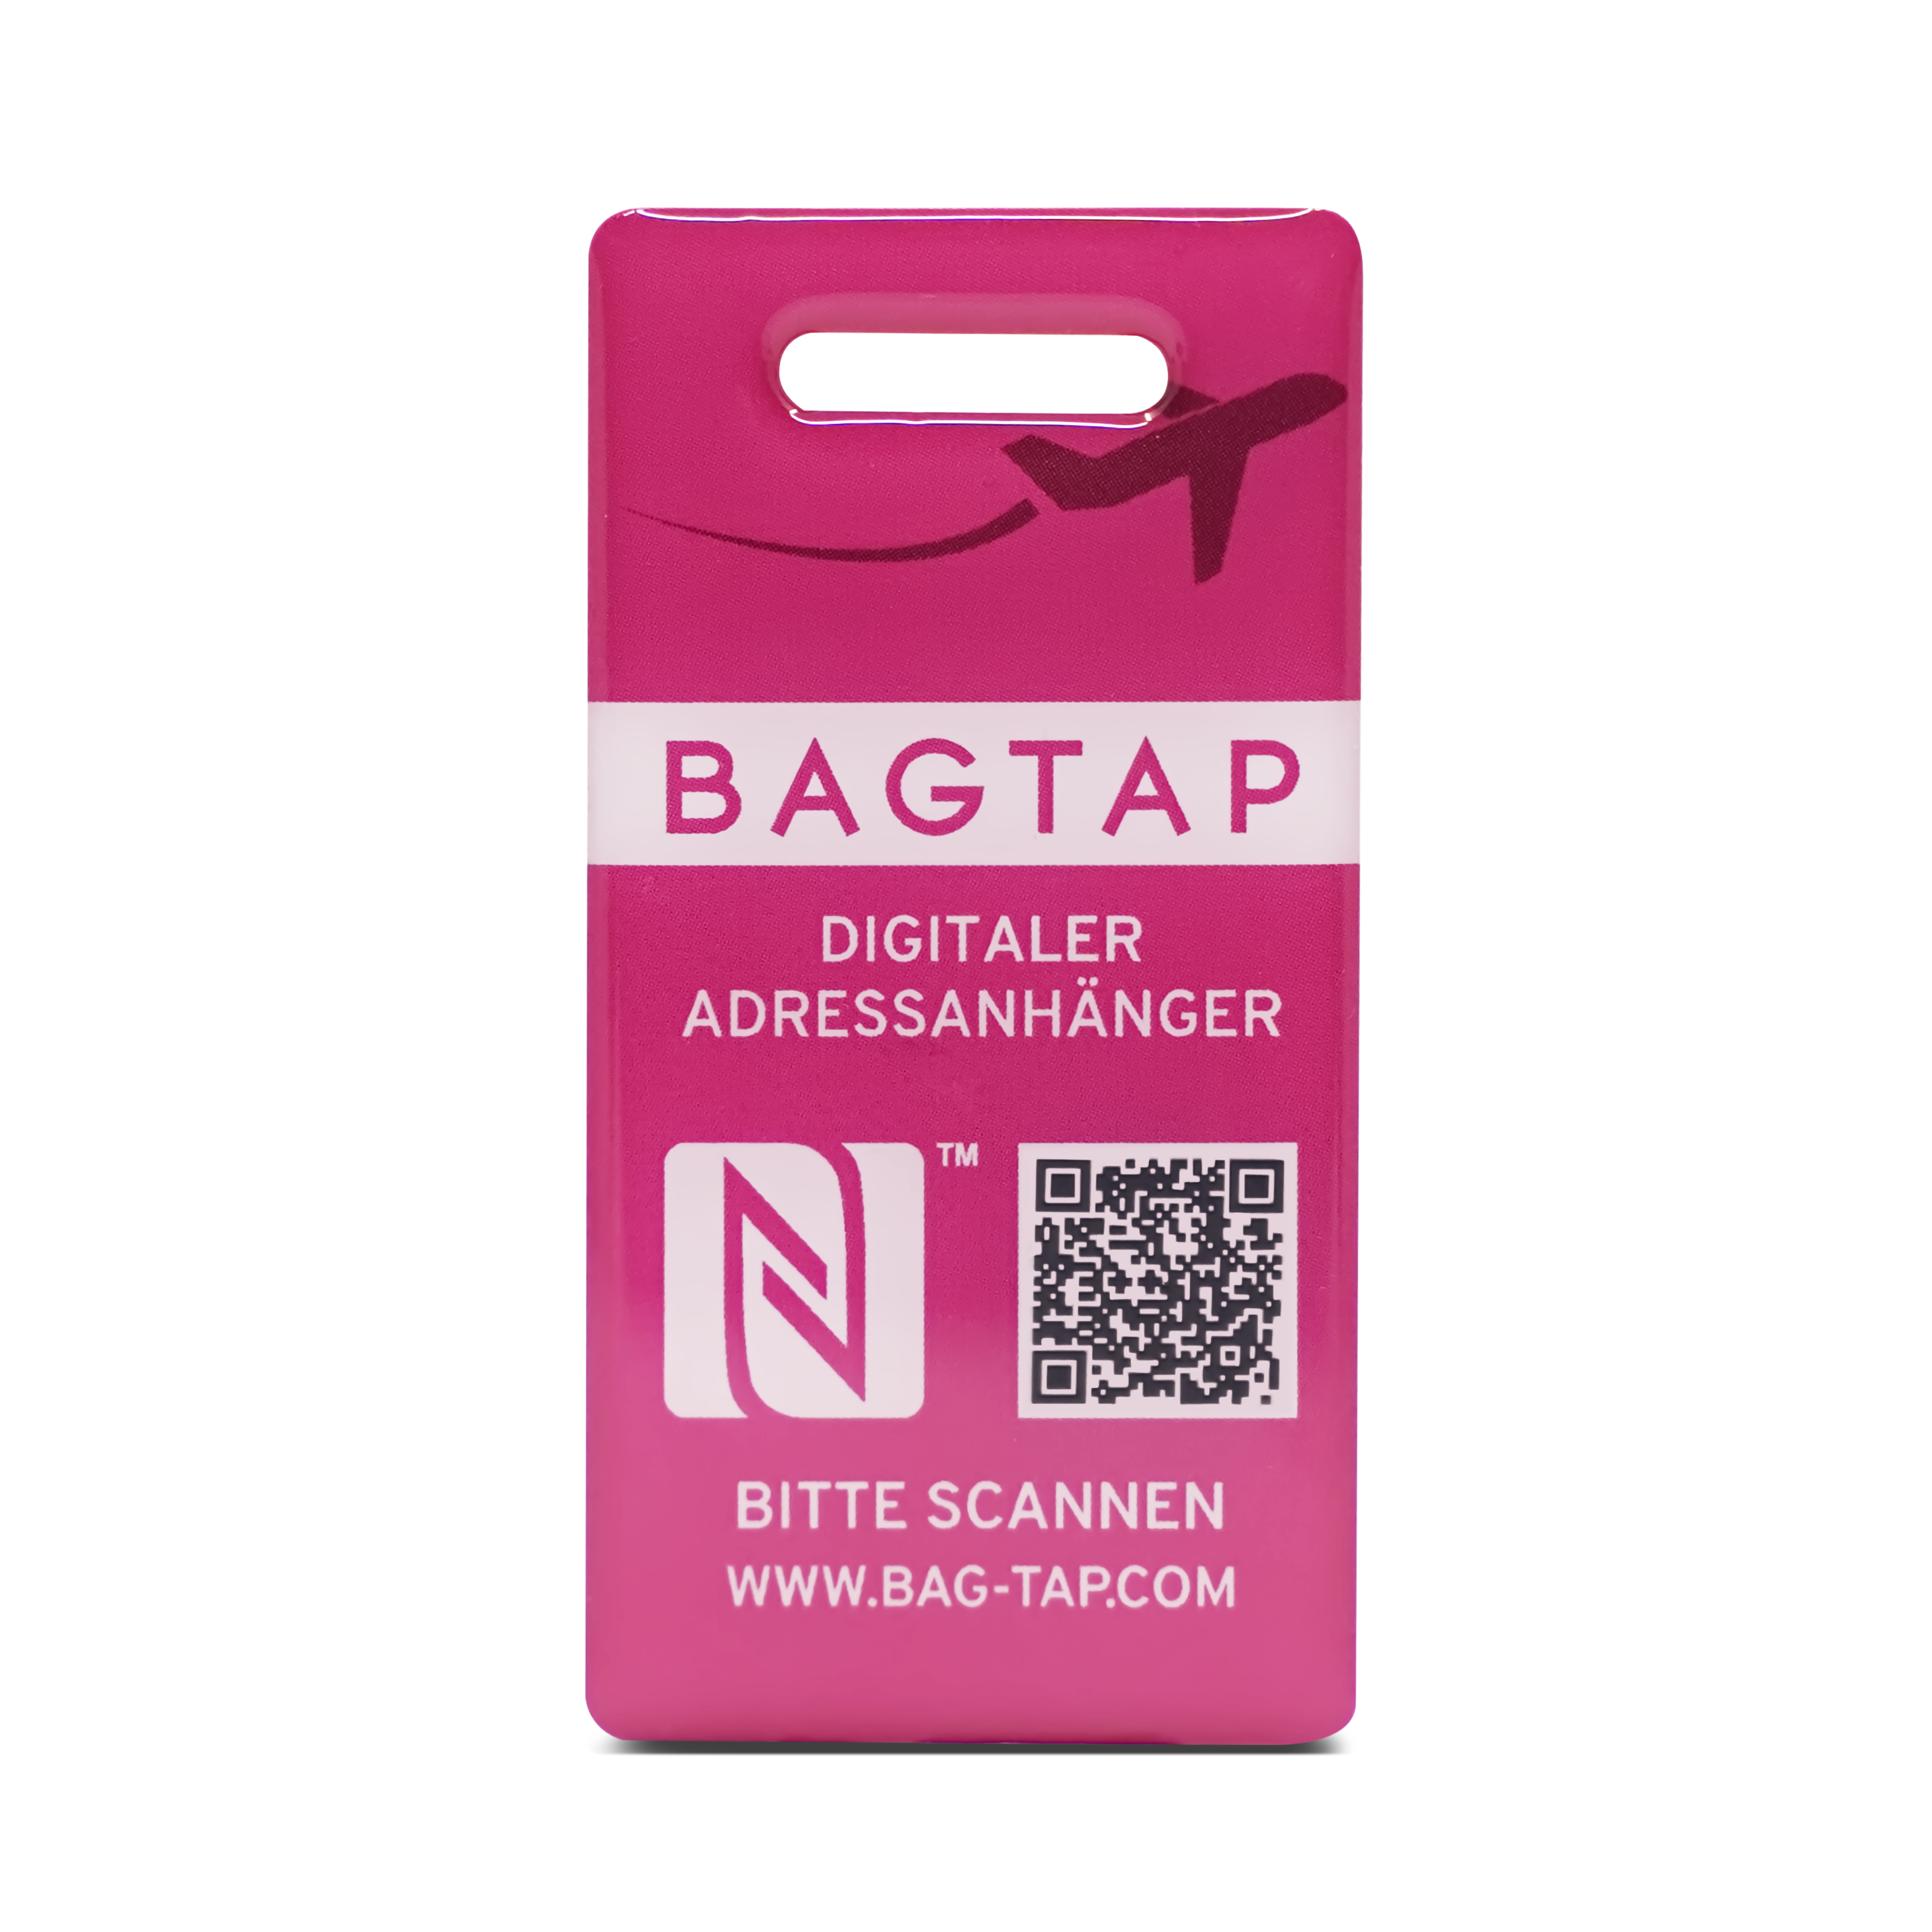 Bagtap PVC Epoxy - Digital address tag - 30 x 60 mm - pink